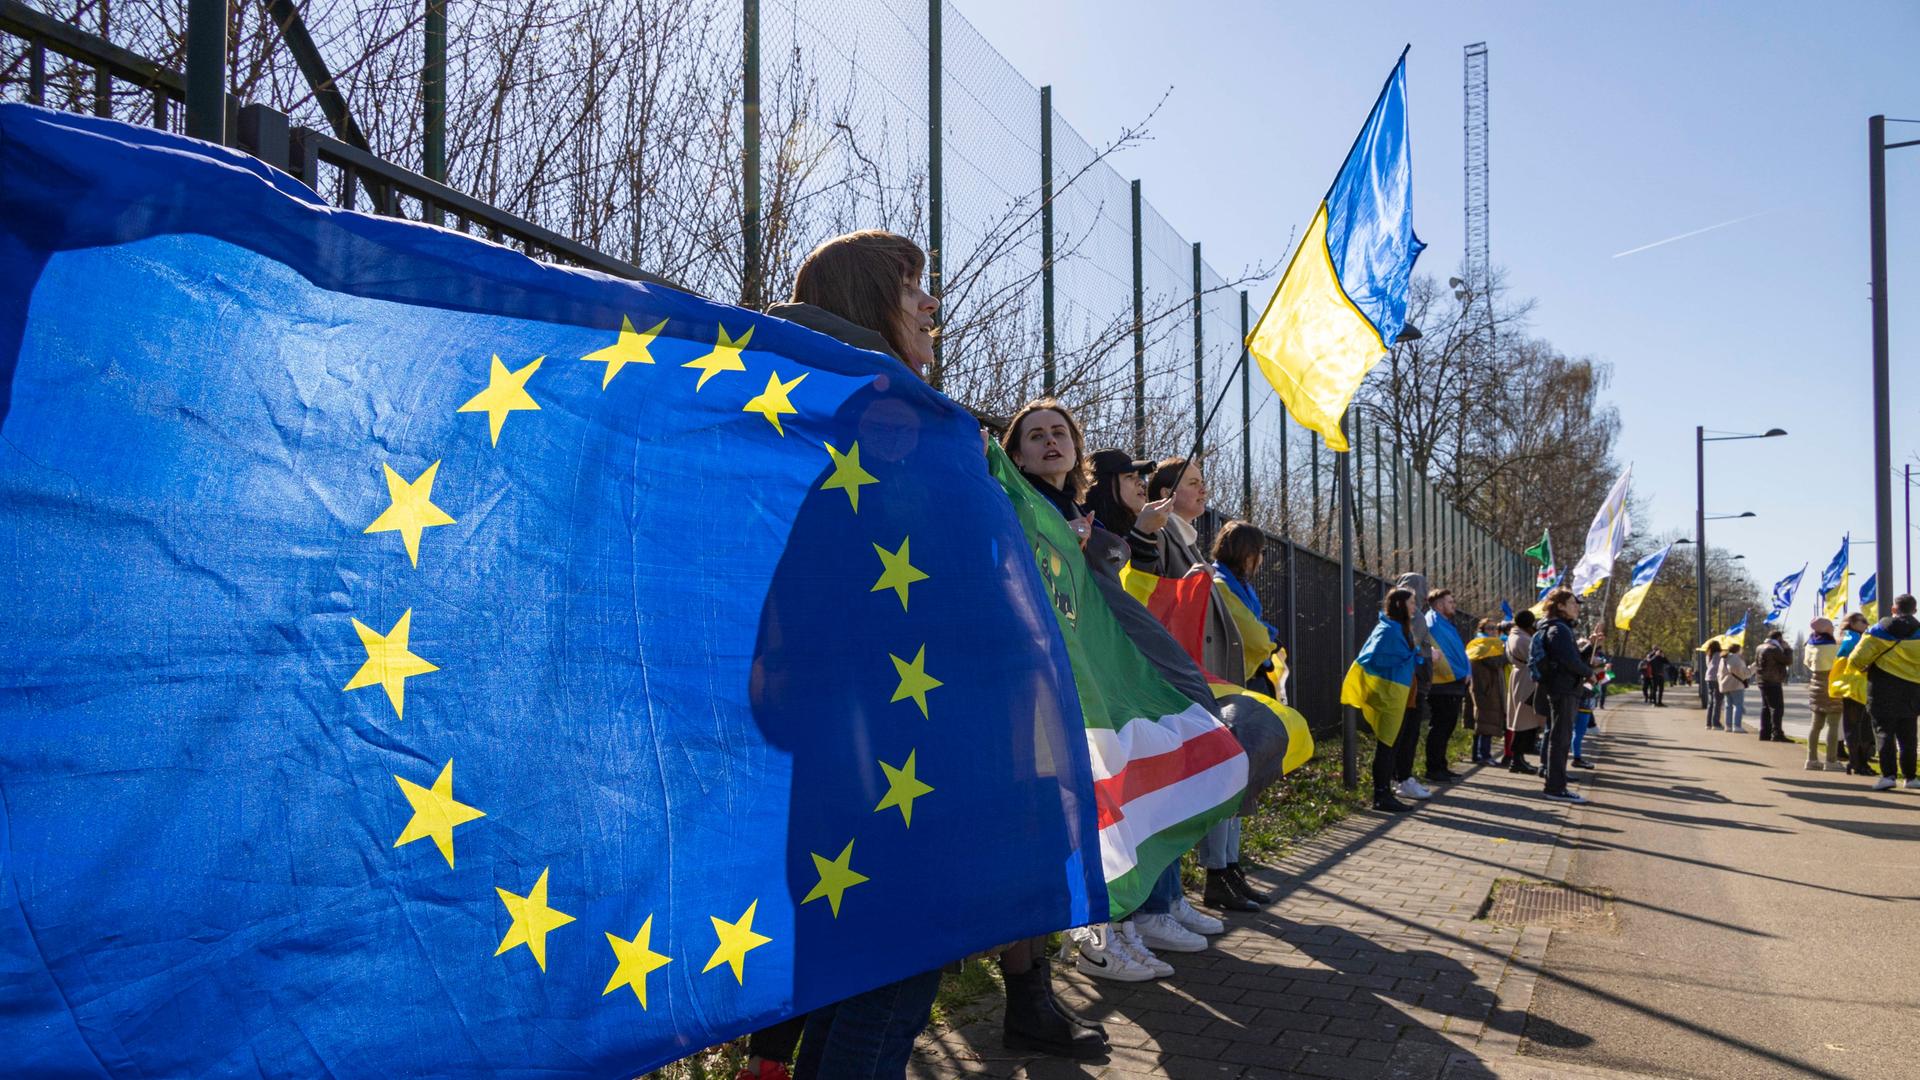 Eine EU-Fahne und viele blau-gelbe Fahnen der Ukraine sind auf einer Demonstration in Brüssel zu sehen.